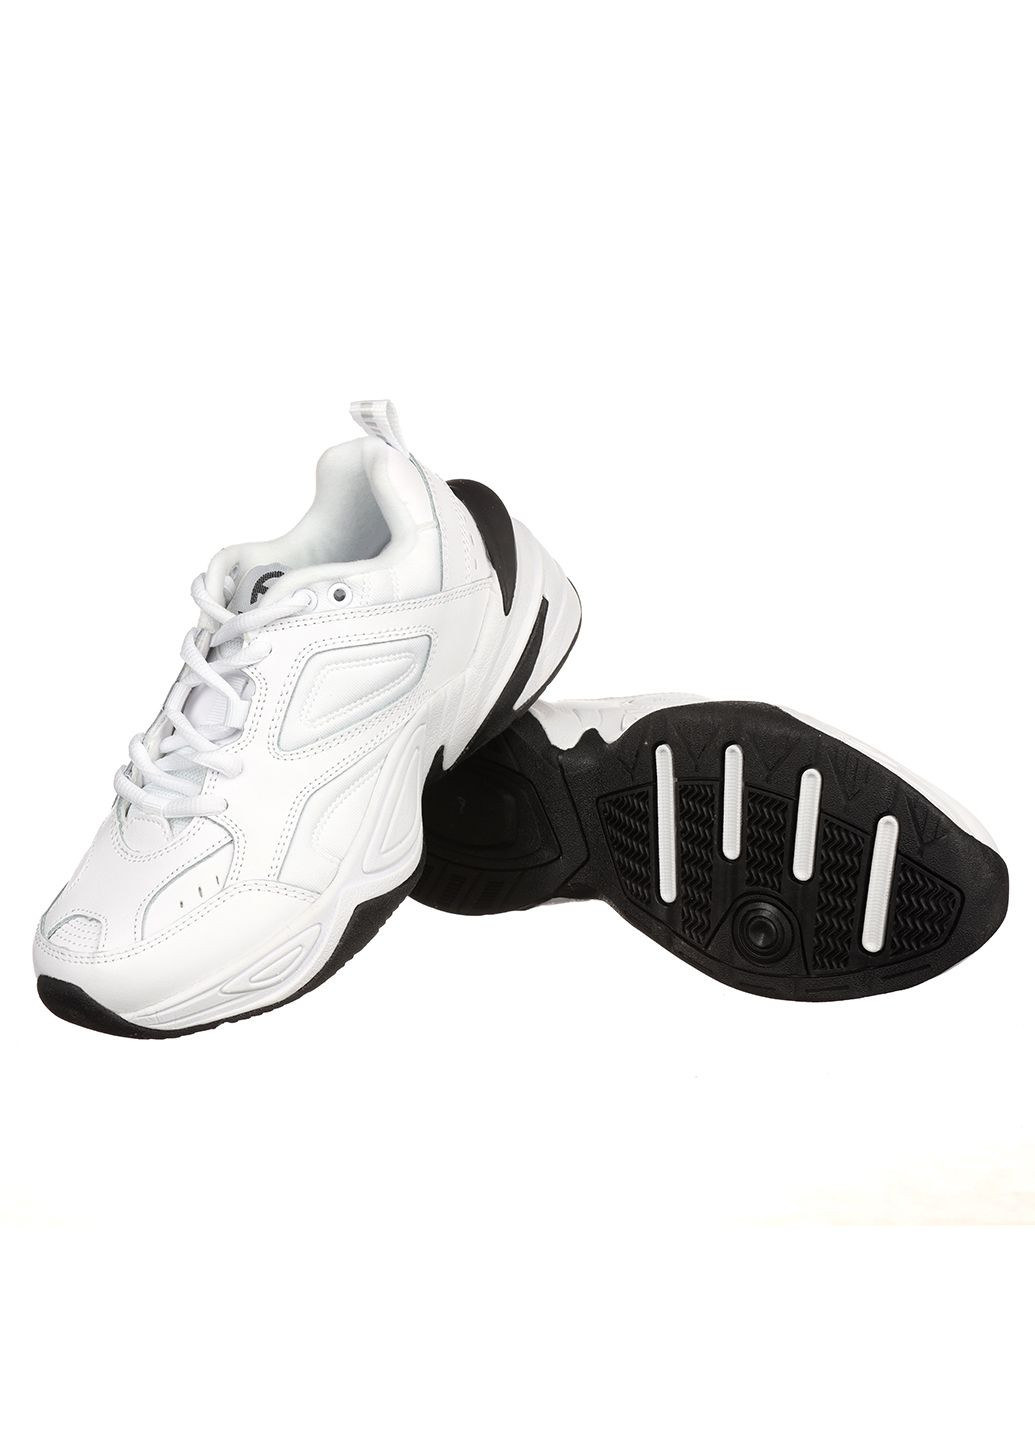 Белые демисезонные женские кроссовки g3452-2 Classica